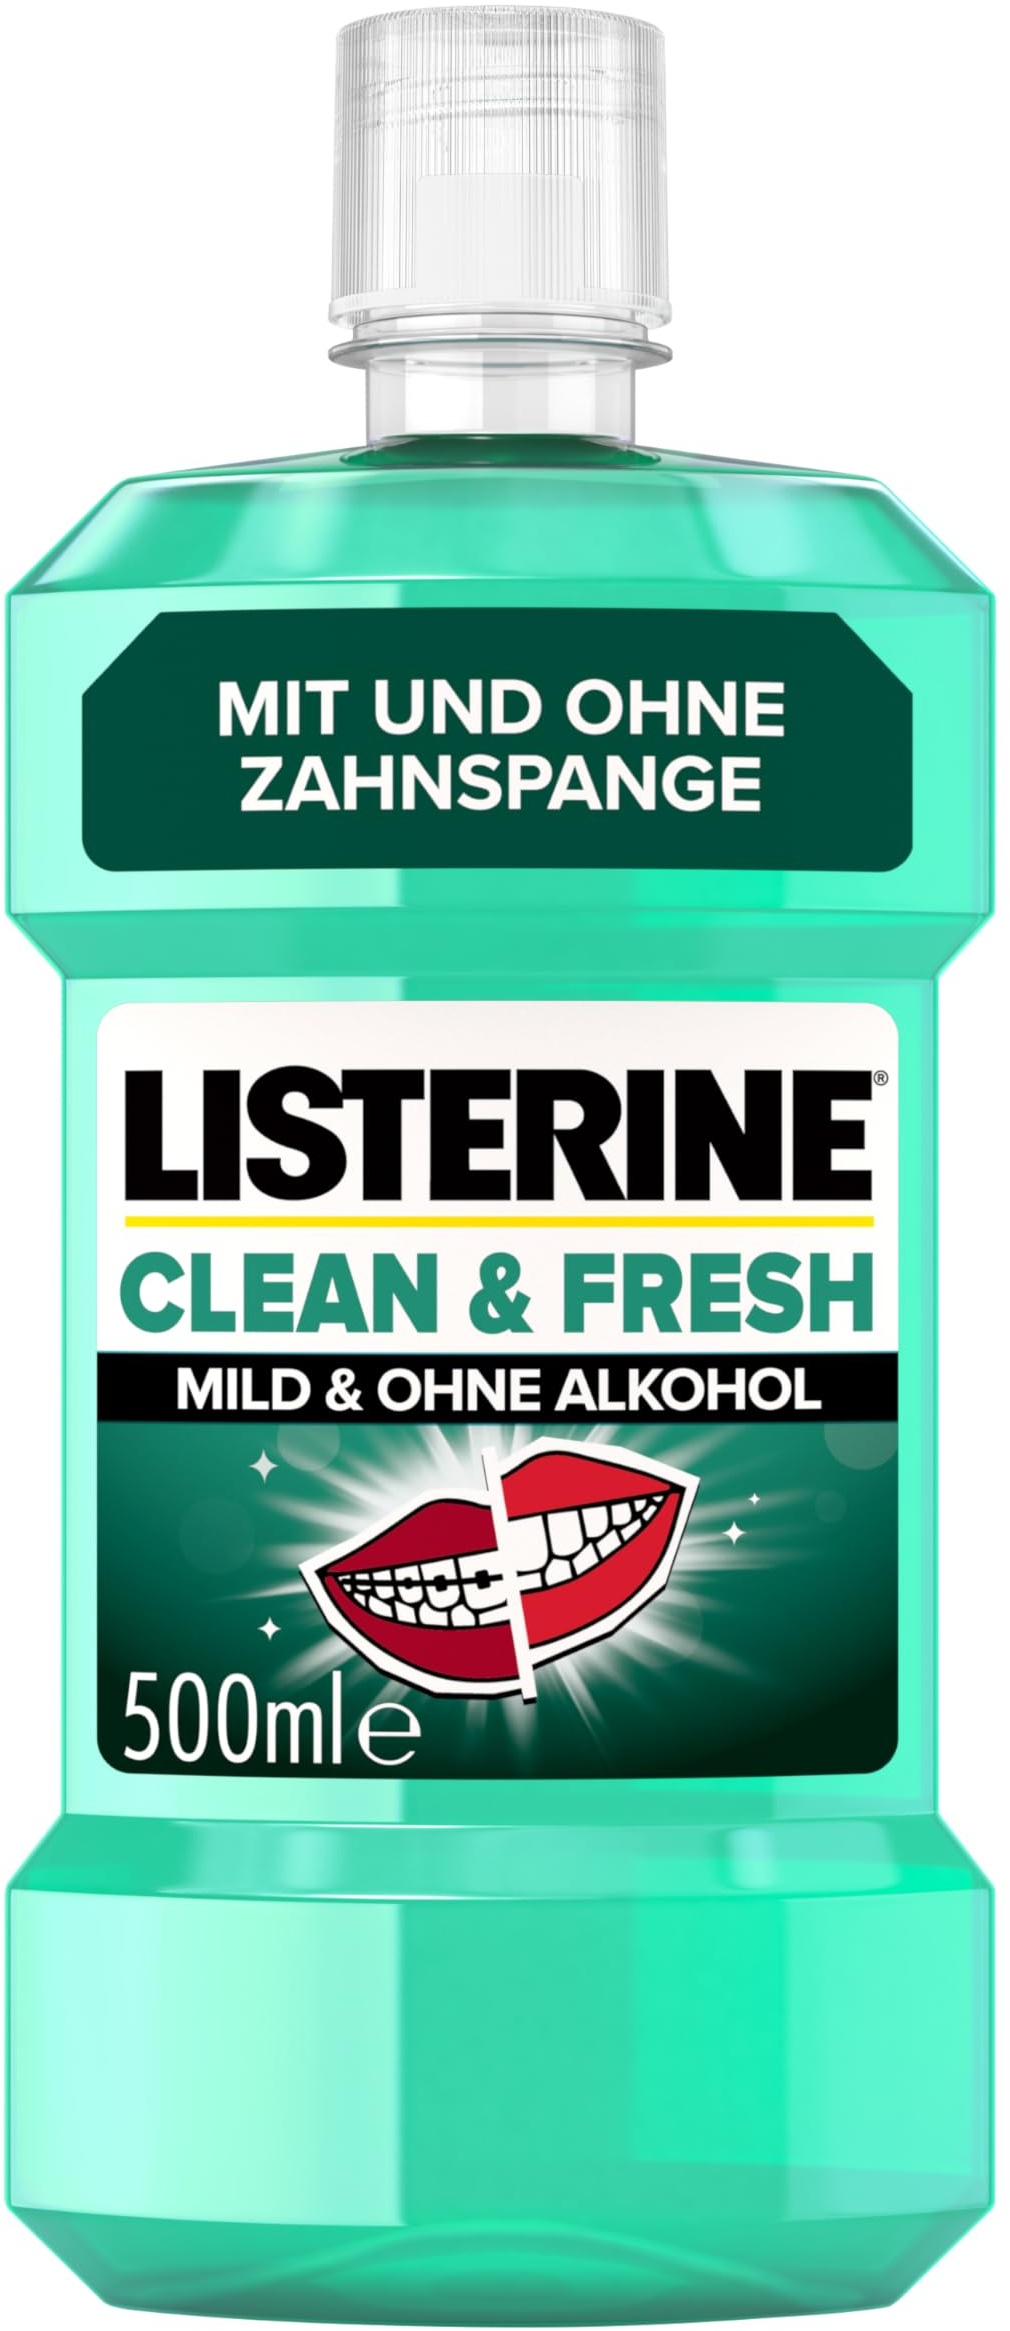 LISTERINE Clean & Fresh (500 ml), antibakterielle Mundspülung mit ätherischen Ölen, Mundwasser ohne Alkohol, perfekte Ergänzung zur täglichen Zahnpflege mit und ohne Zahnspange